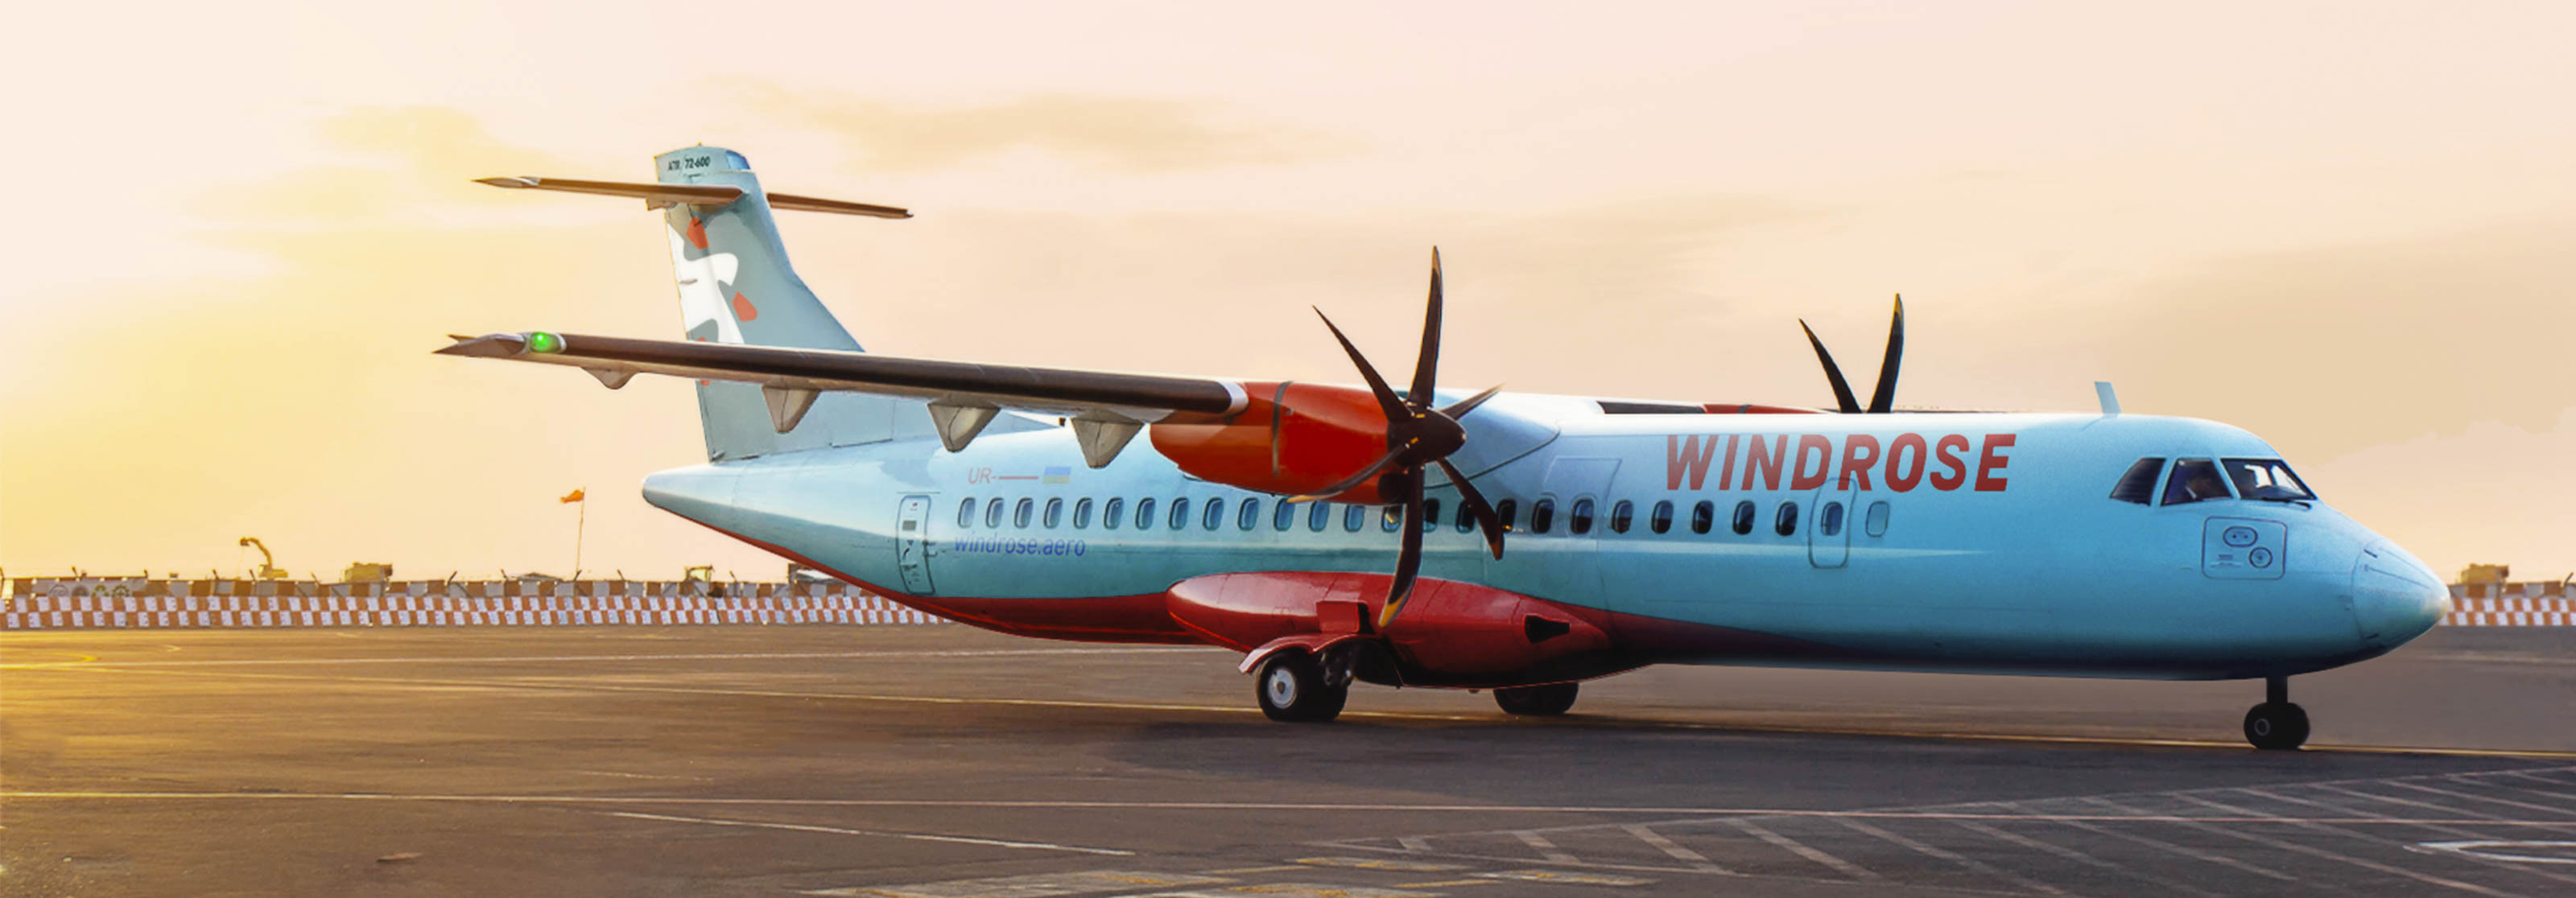 Windrose планує відновити дешеві рейси до Івано-Франківська лише з листопада 2020 року